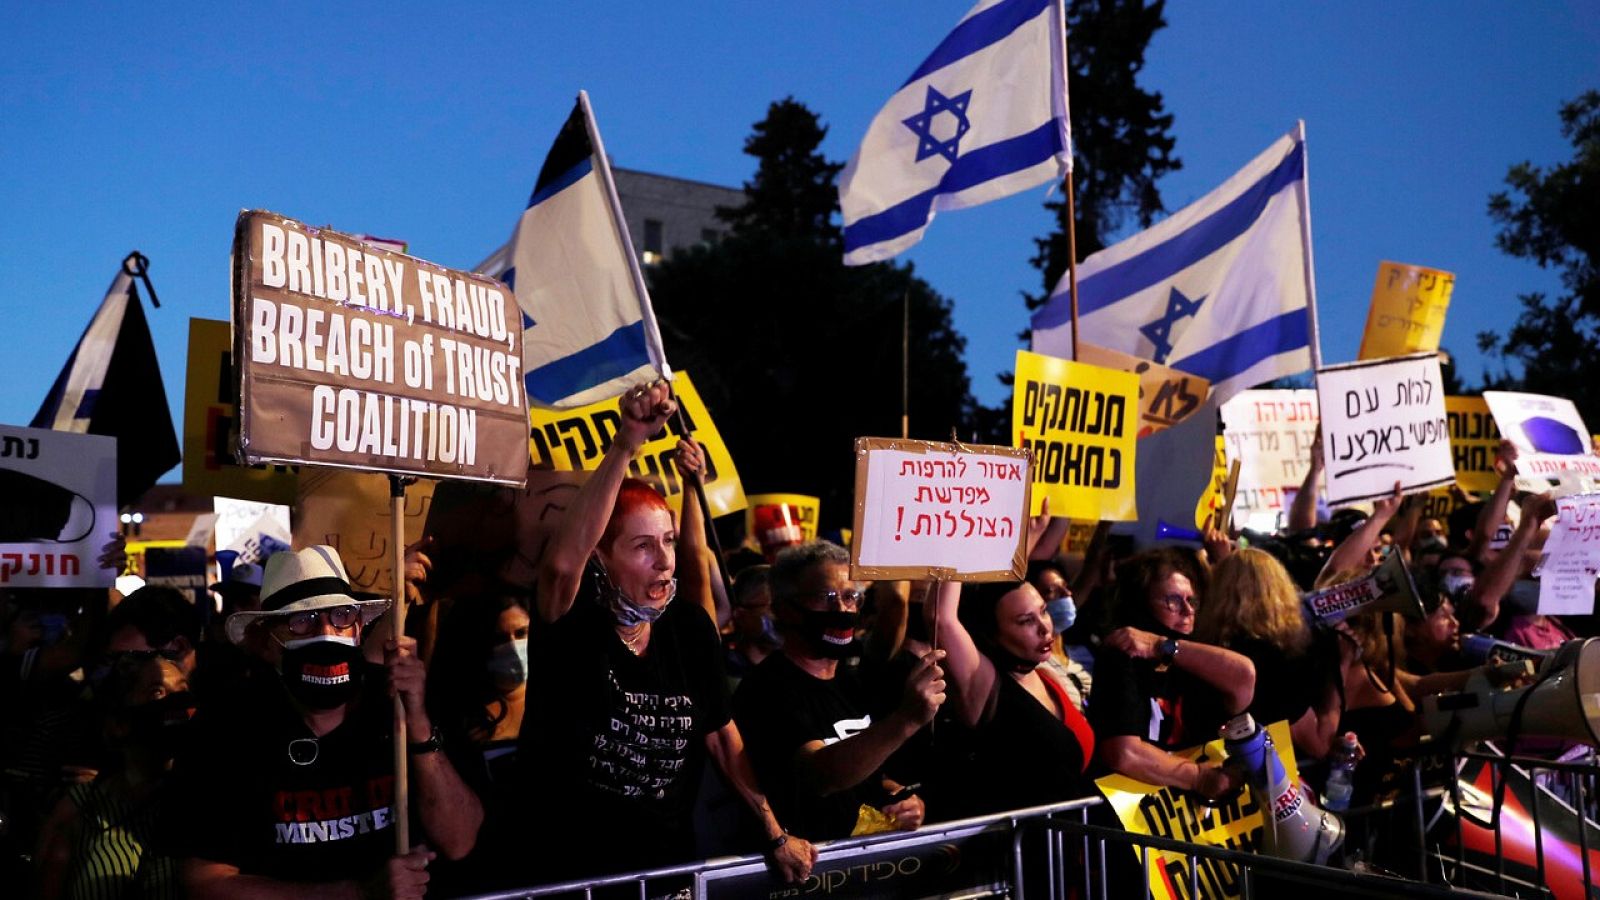 Los ultraortodoxos protestan en Israel por la gestión de la pandemia y la discriminación - RTVE.es